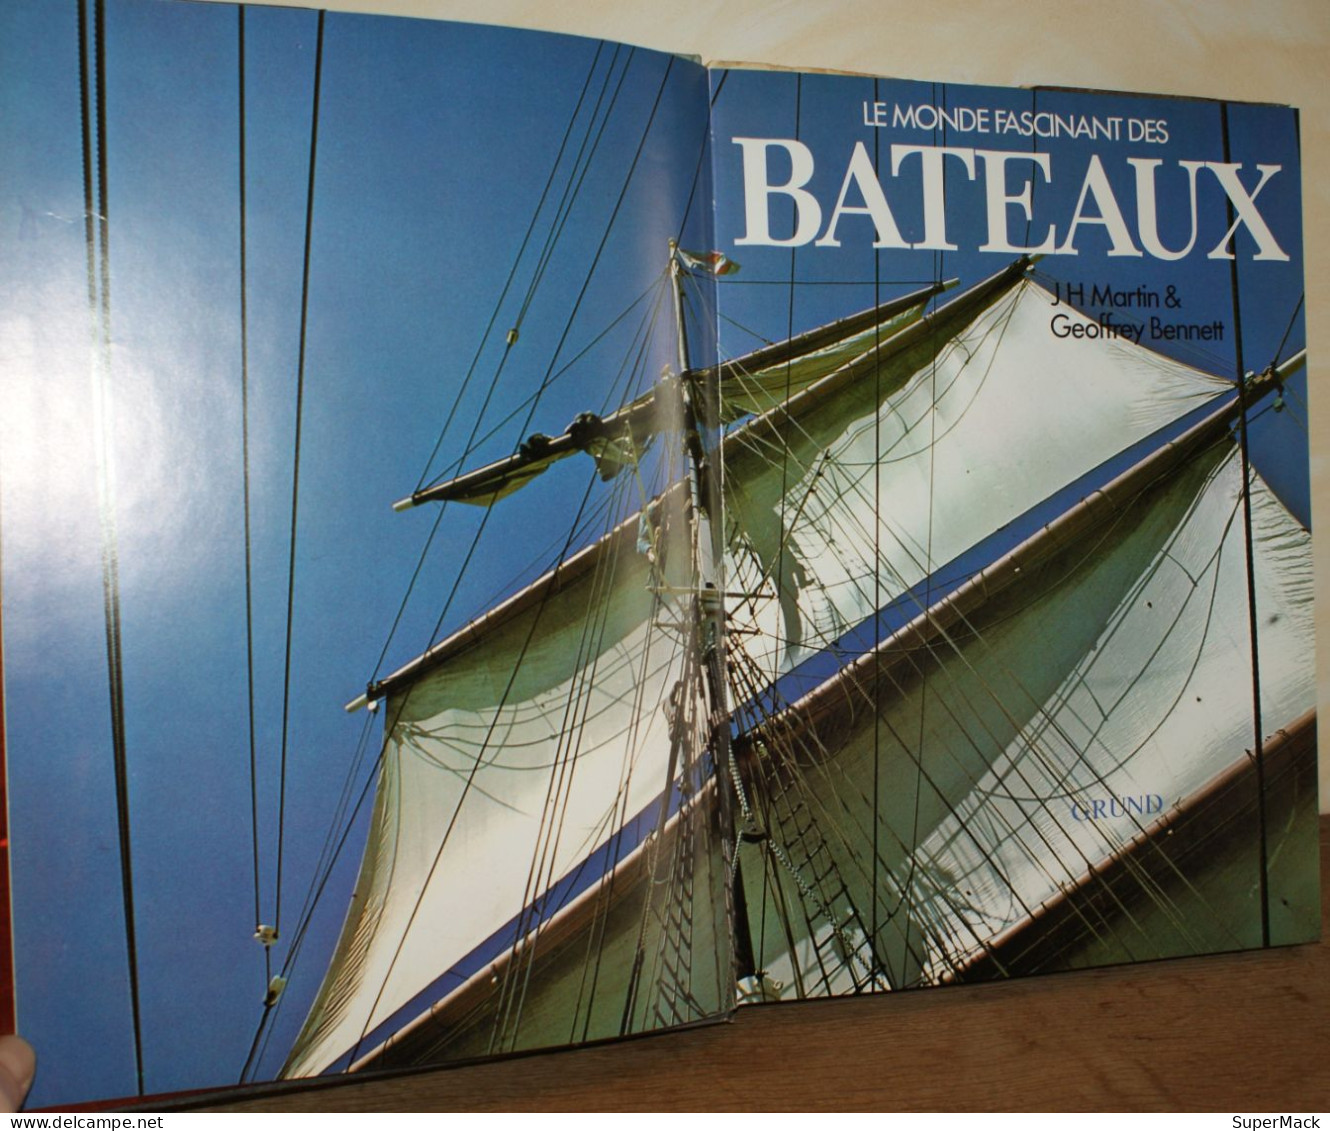 Martin & Bennett - Le monde fascinant des bateaux - Éditions Gründ Paris - édition originale 1977